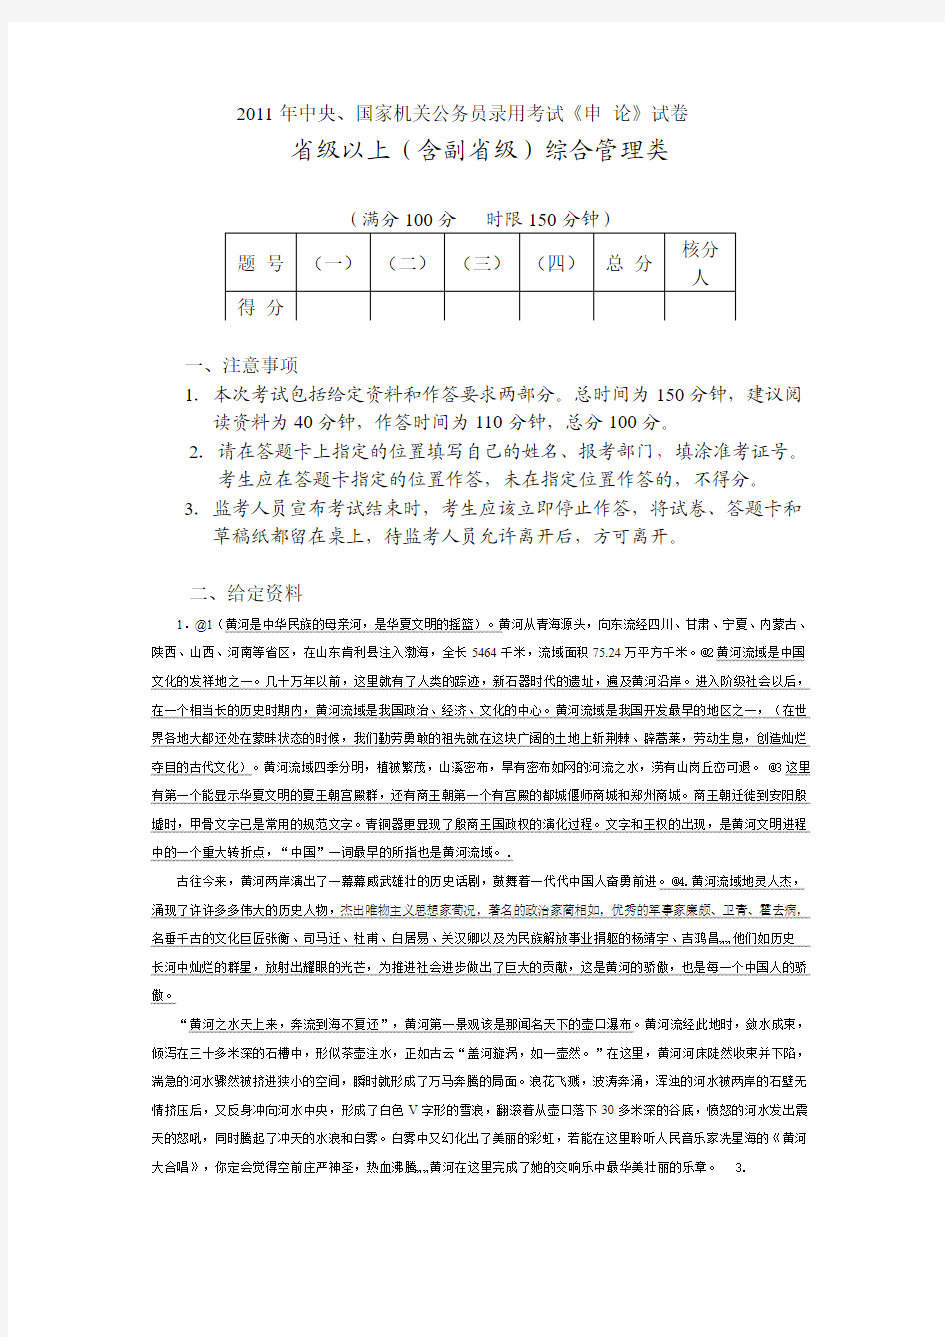 2011年中央国家机关公务员录用考试《申_论》试卷